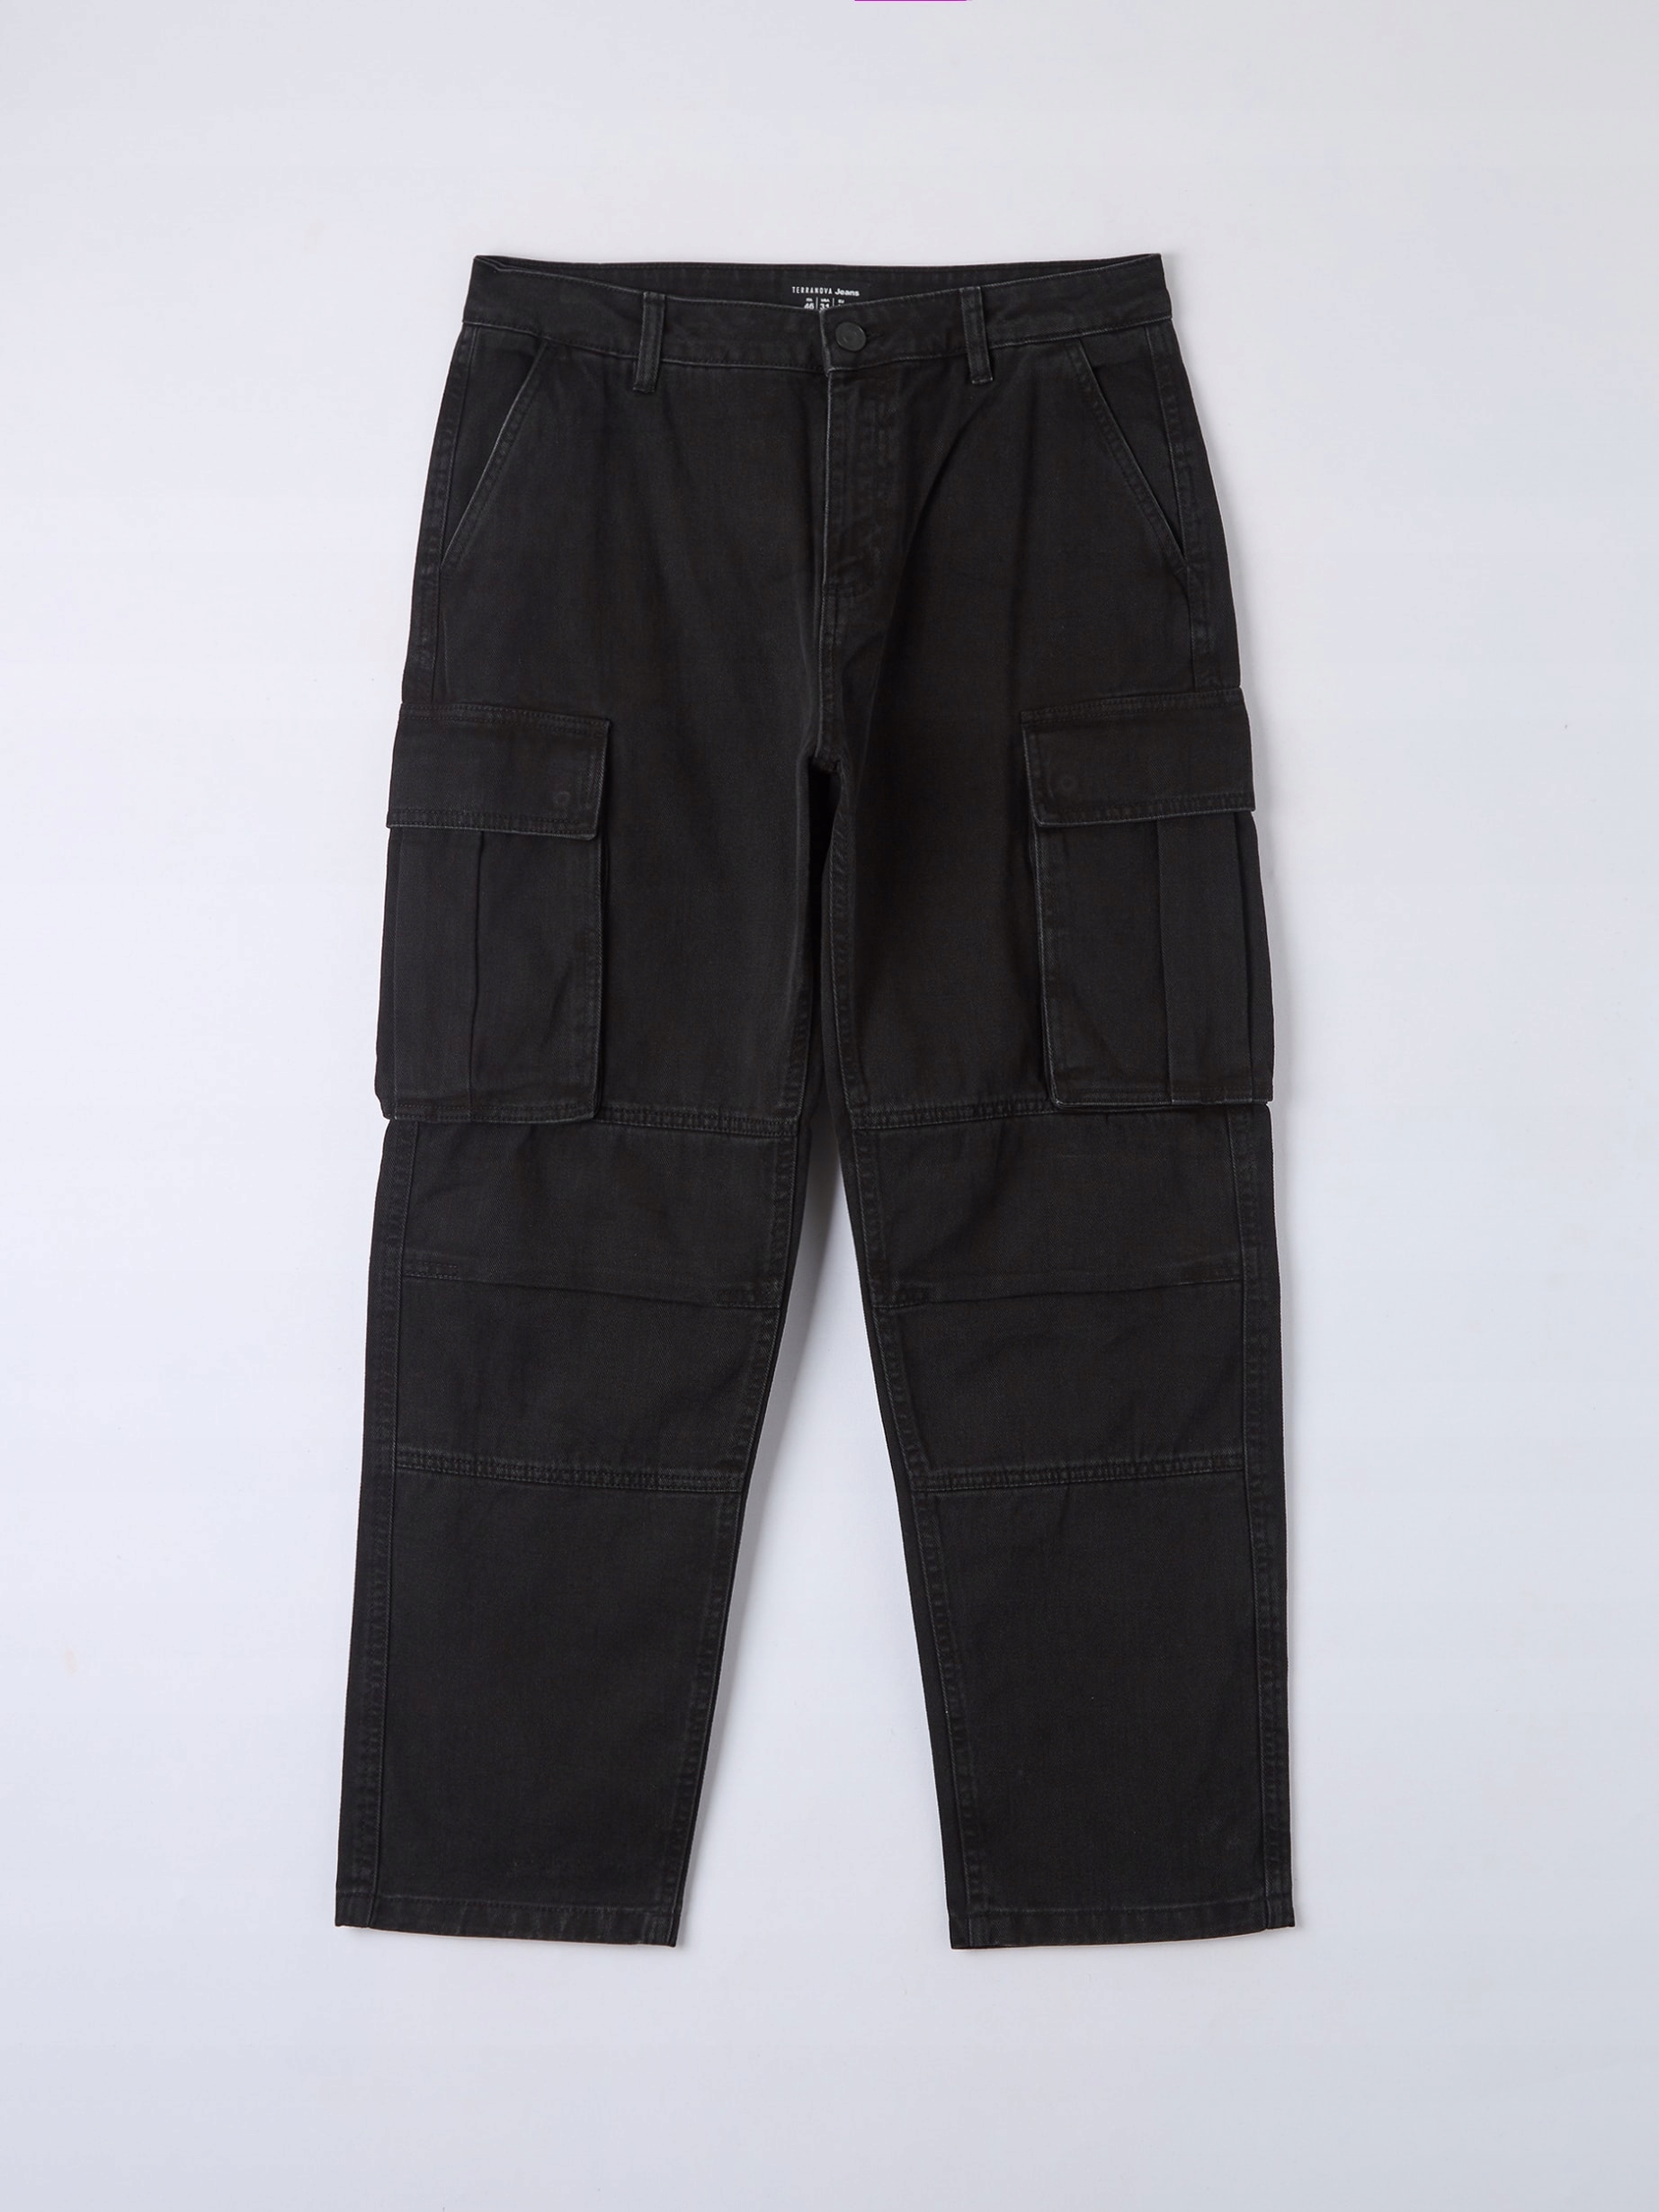 TERRANOVA džínsové nohavice čierne cargo milície široké nohavice W31 82cm